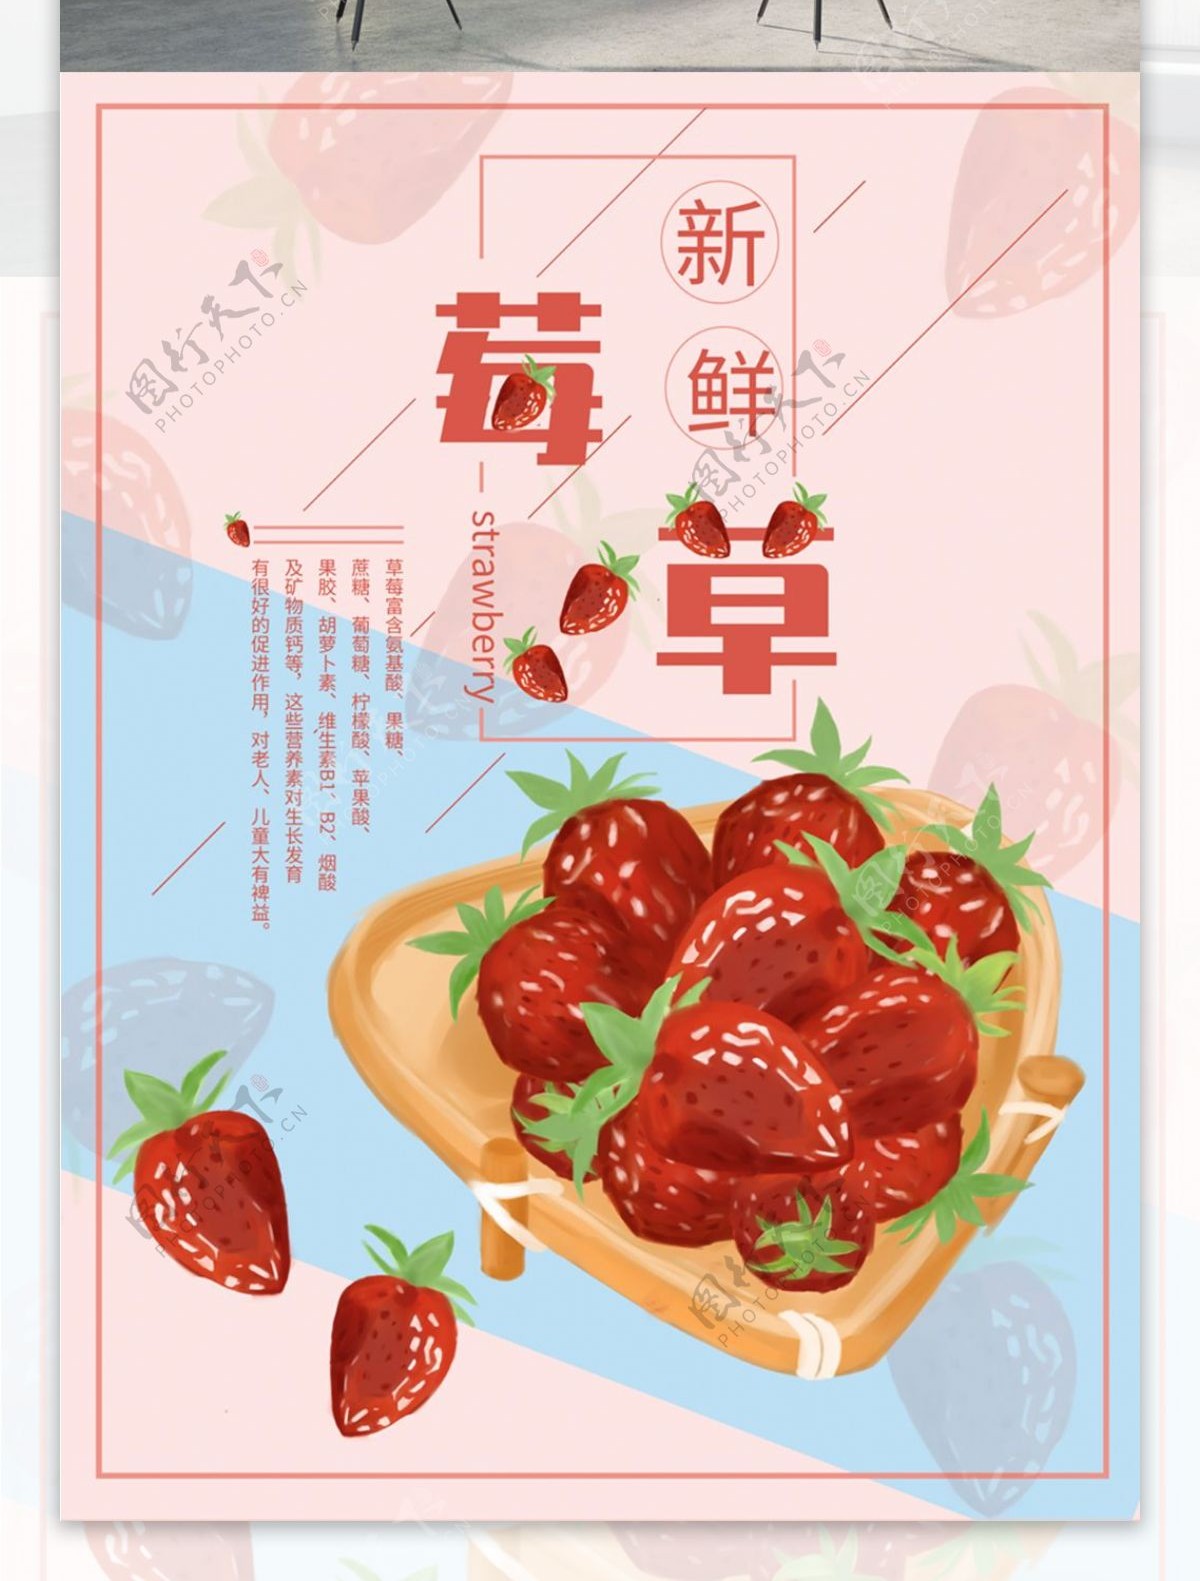 原创手绘草莓海报